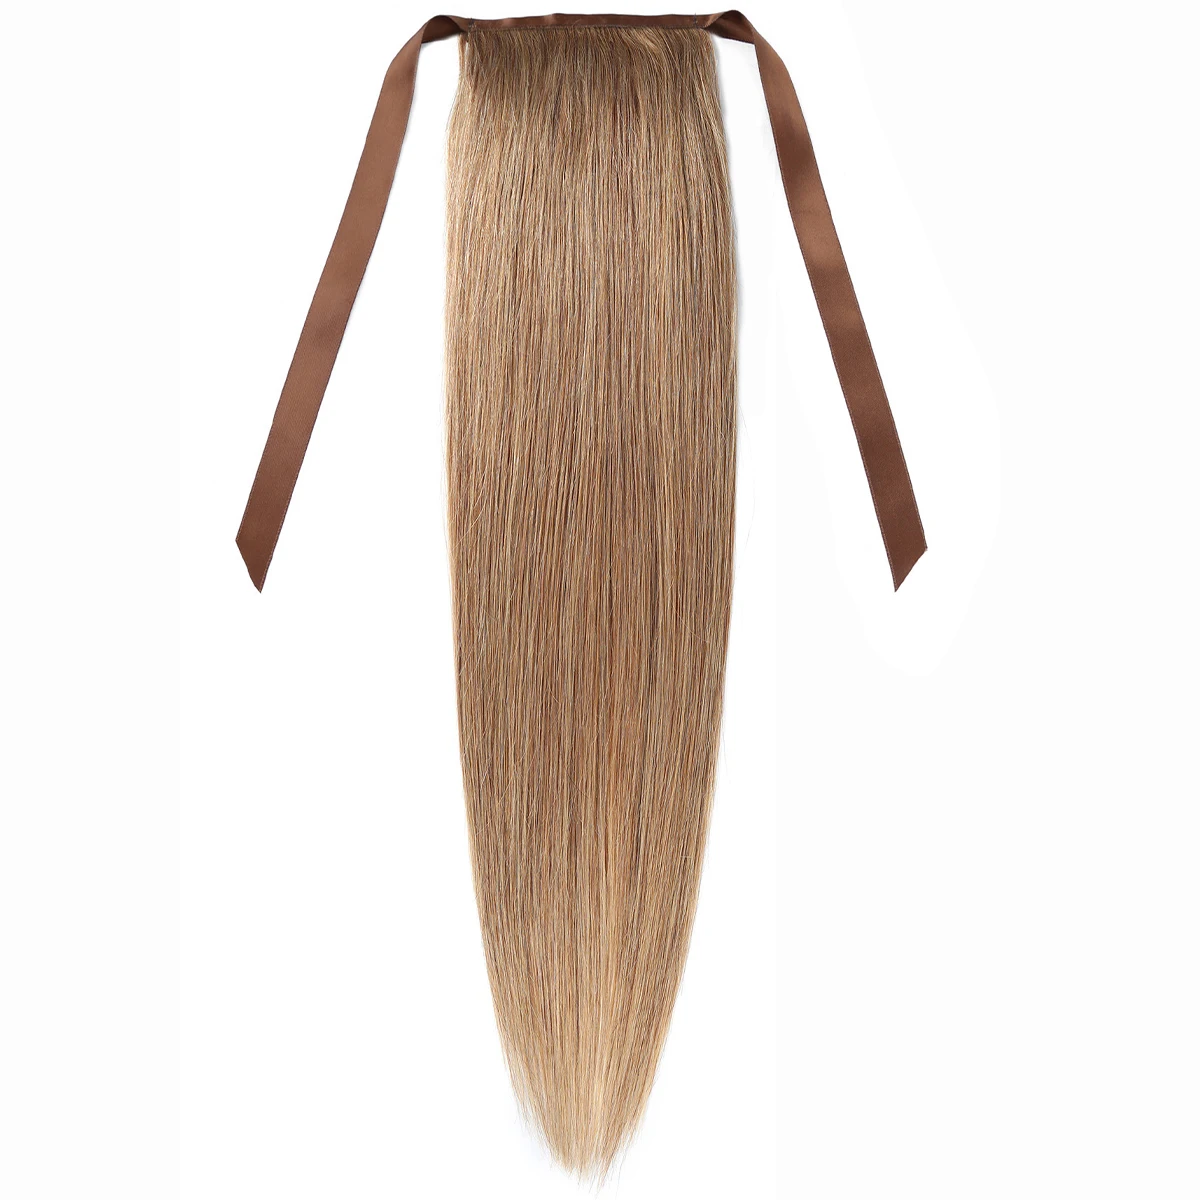 Şerit At Kuyruğu İnsan Saç Kravat Sarılı düz At Kuyruğu ile bir Klip,#27 Renk 100% gerçek saç ekleme Günlük kullanım için